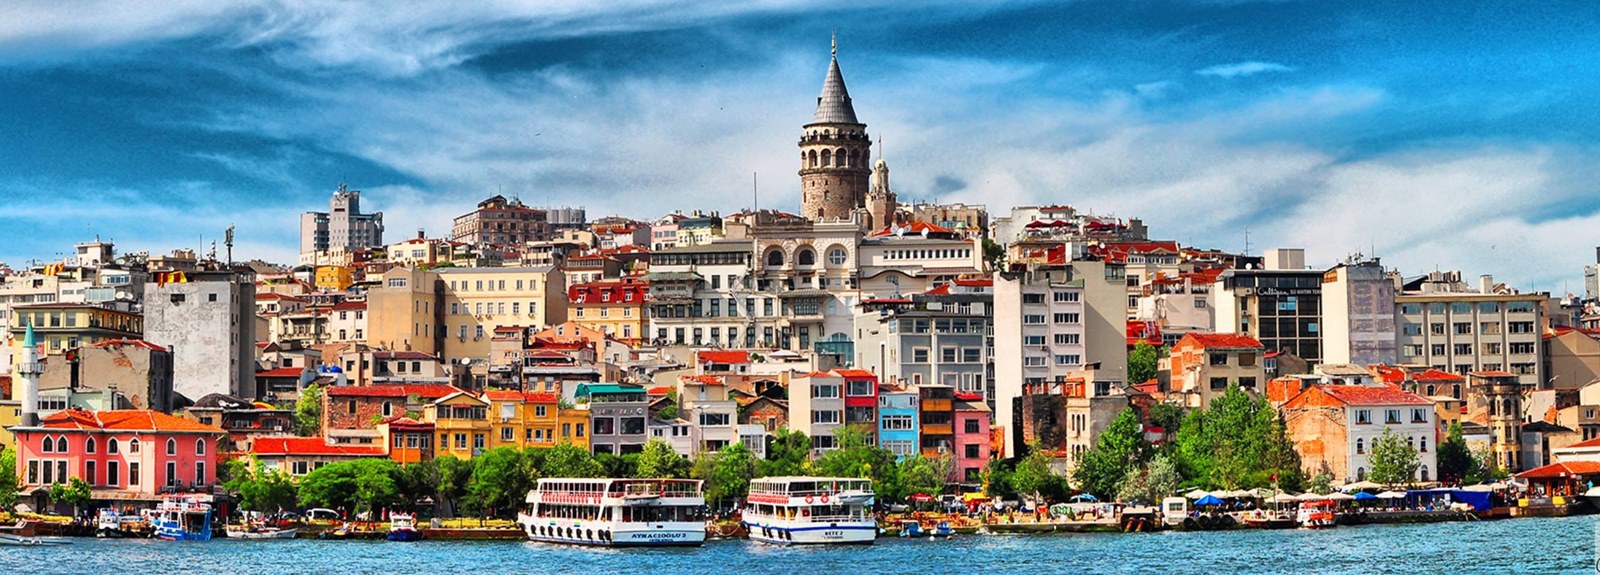 لماذا اسطنبول هي أهم مدينة في العالم؟ 1 استكشف تركيا, اسطنبول